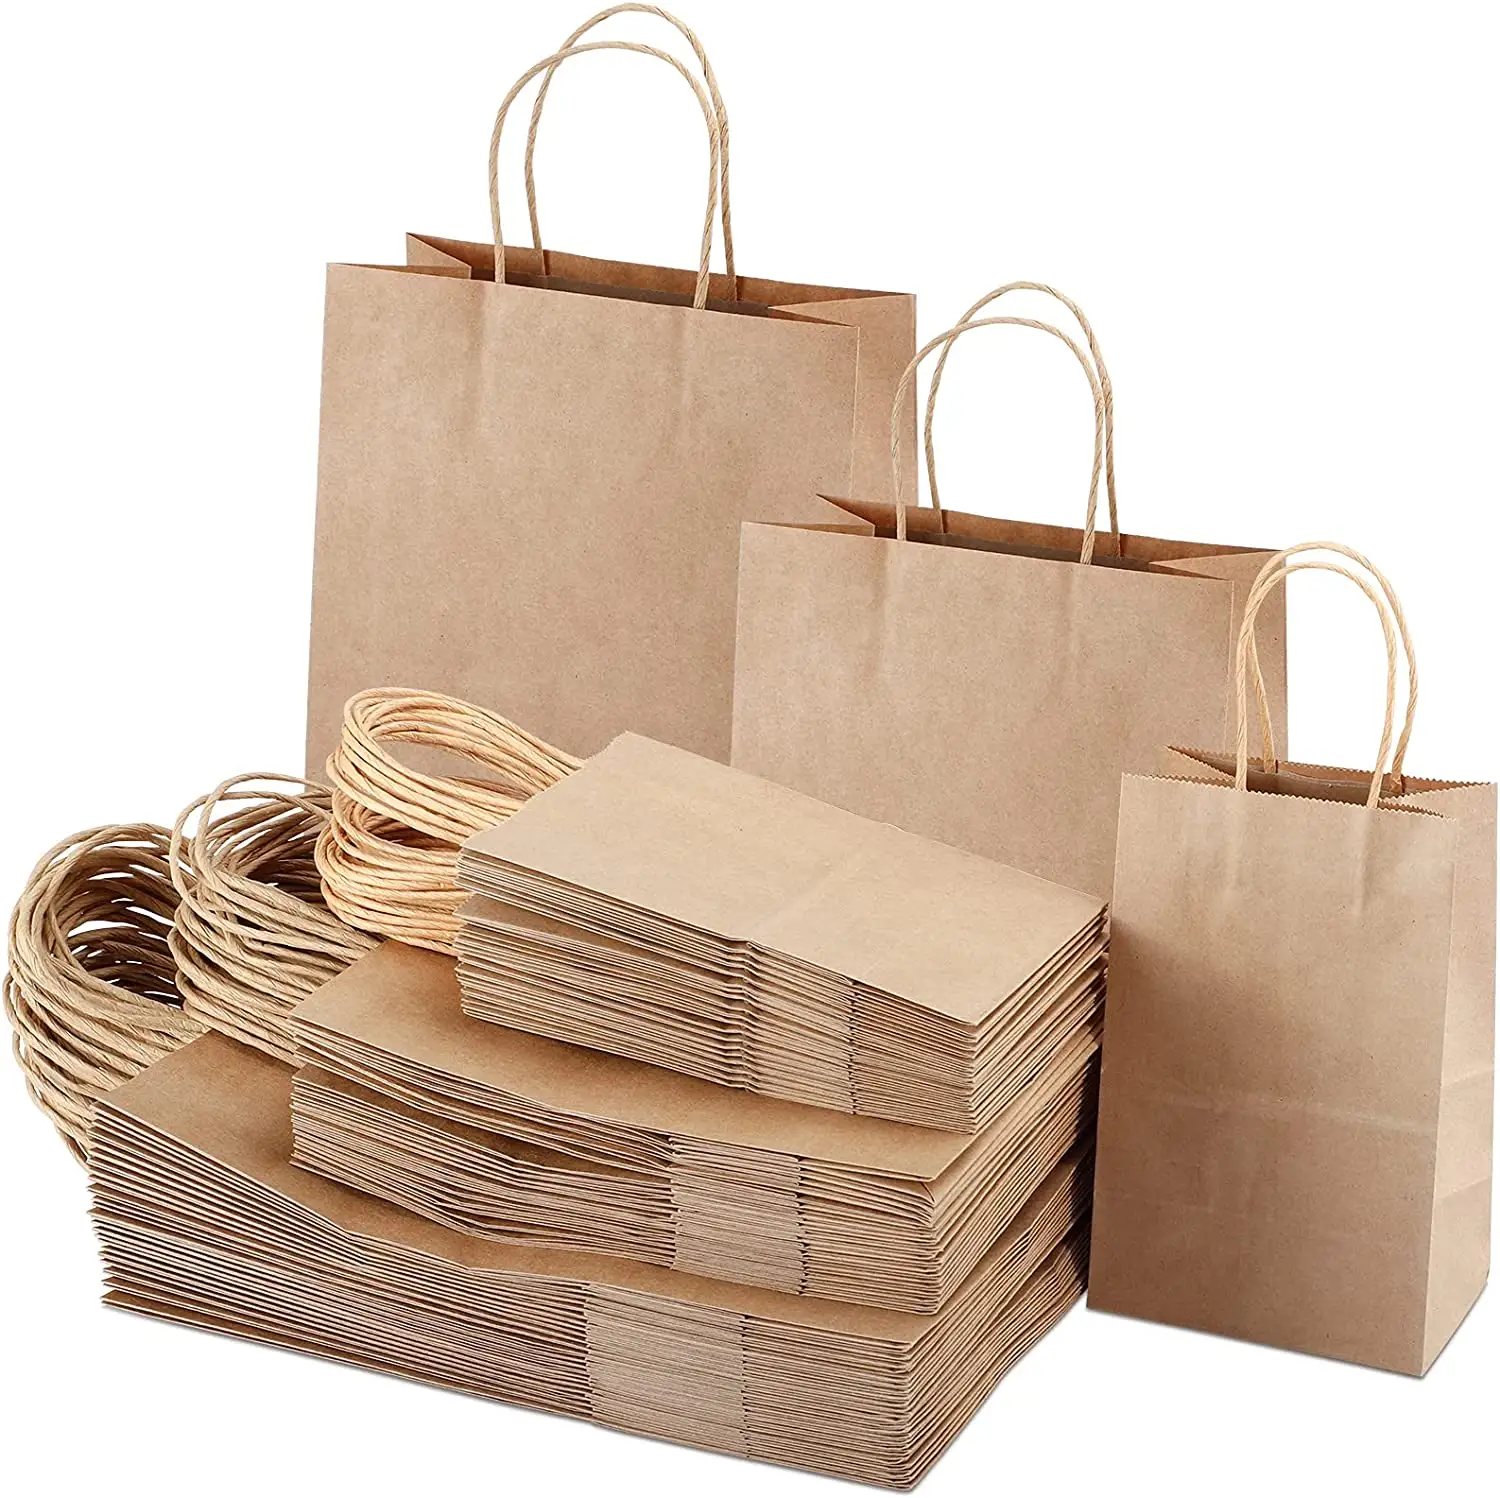 कपड़ों के लिए थोक सस्ते दाम में रिसाइकल करने योग्य पेपर बैग, कस्टम वैयक्तिकृत ब्राउन क्राफ्ट पेपर शॉपिंग बैग